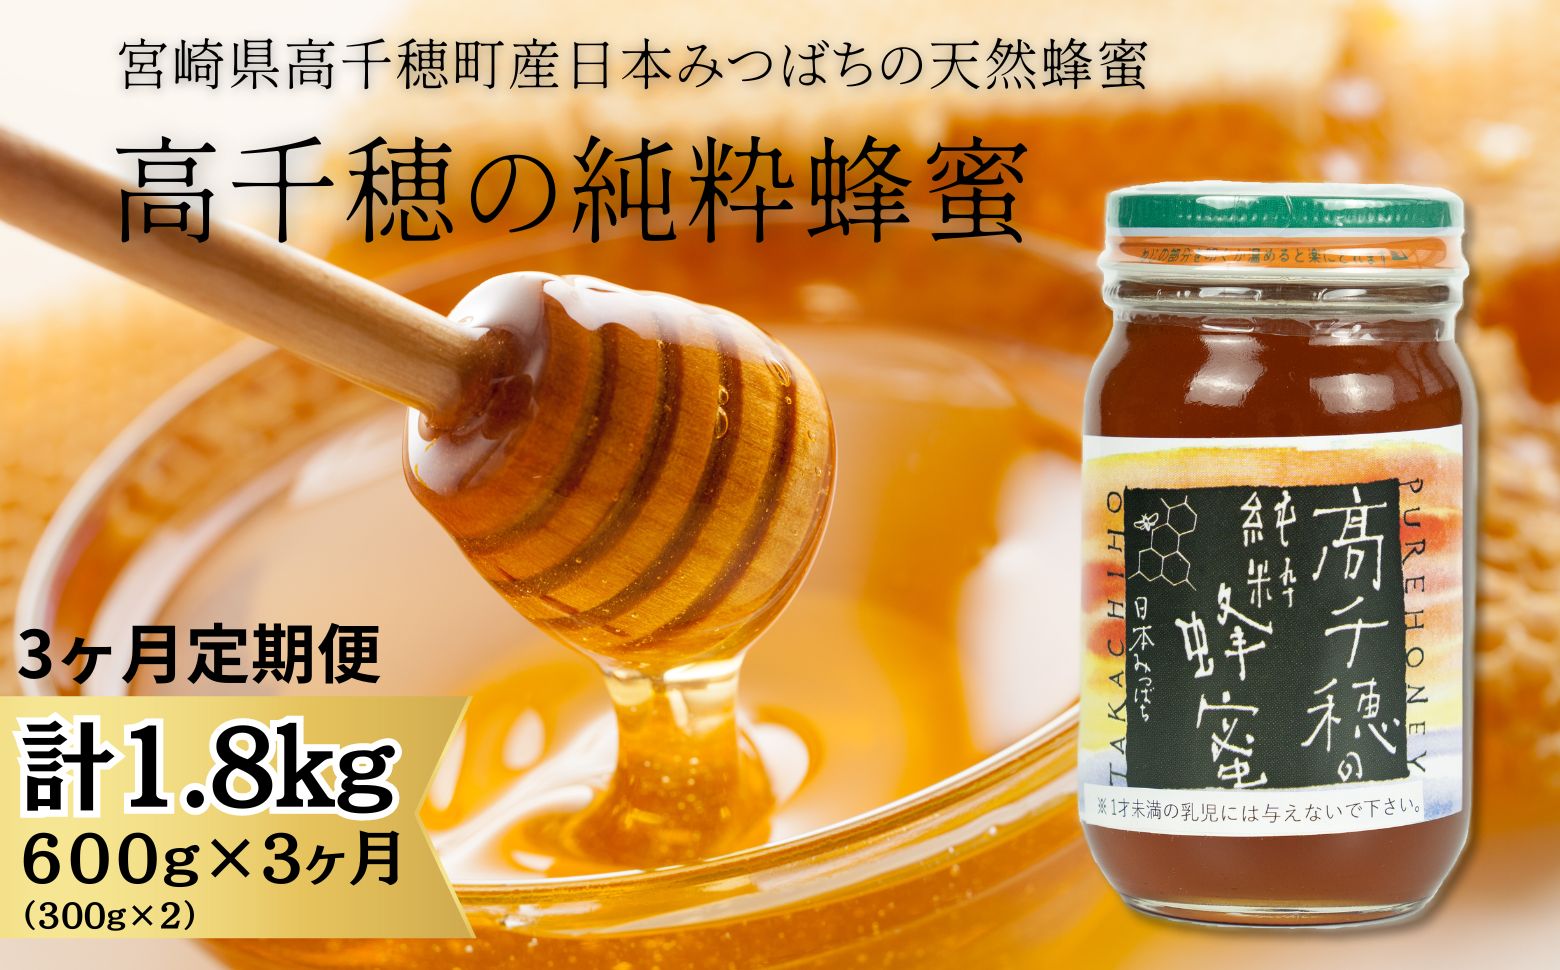 【3ヶ月定期便】日本みつばち 高千穂の純粋蜂蜜 300g×2本 セット T-11